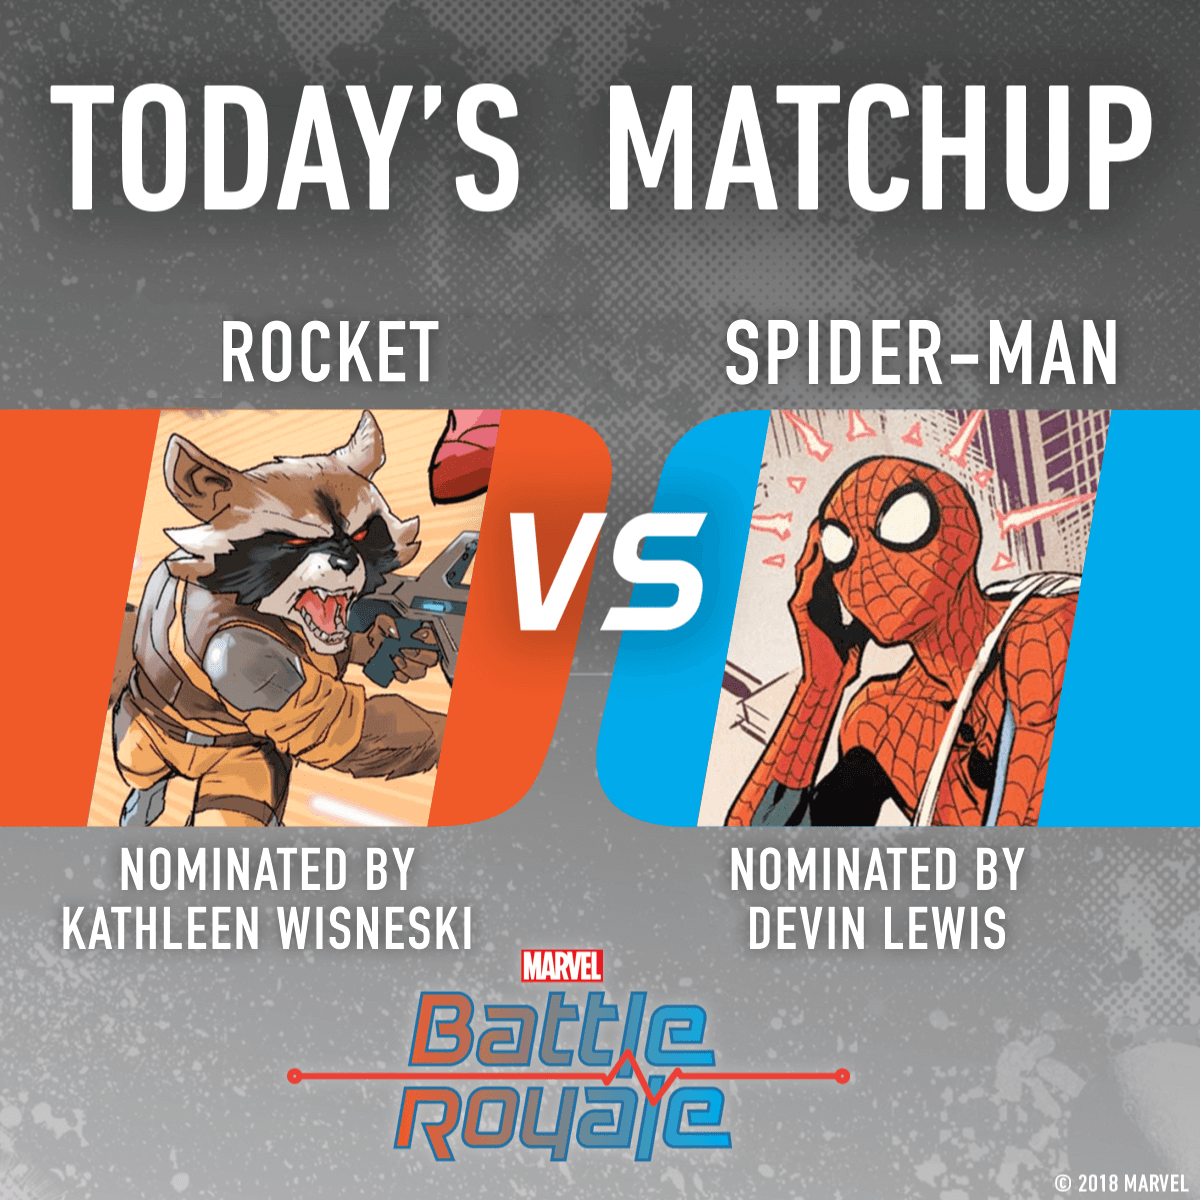 Rocket vs. Spider-Man